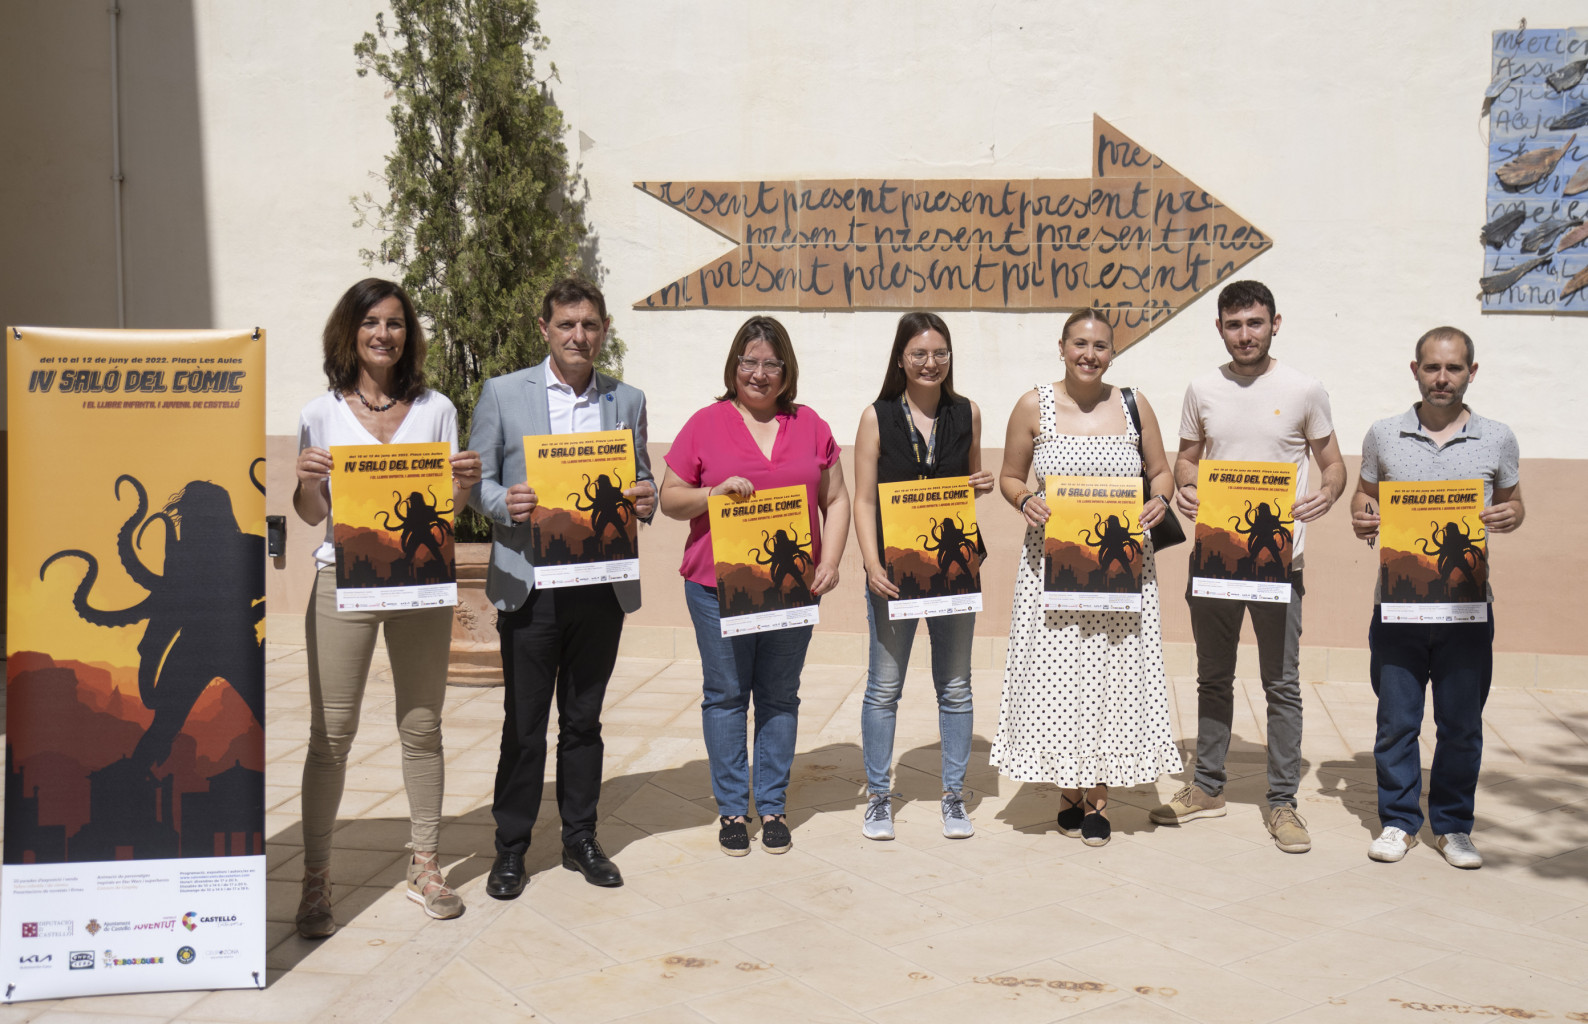 La Plaza de las Aulas de Castellón acogerá una nueva edición del salón del cómic y el libro infantil y juvenil con 20 estands